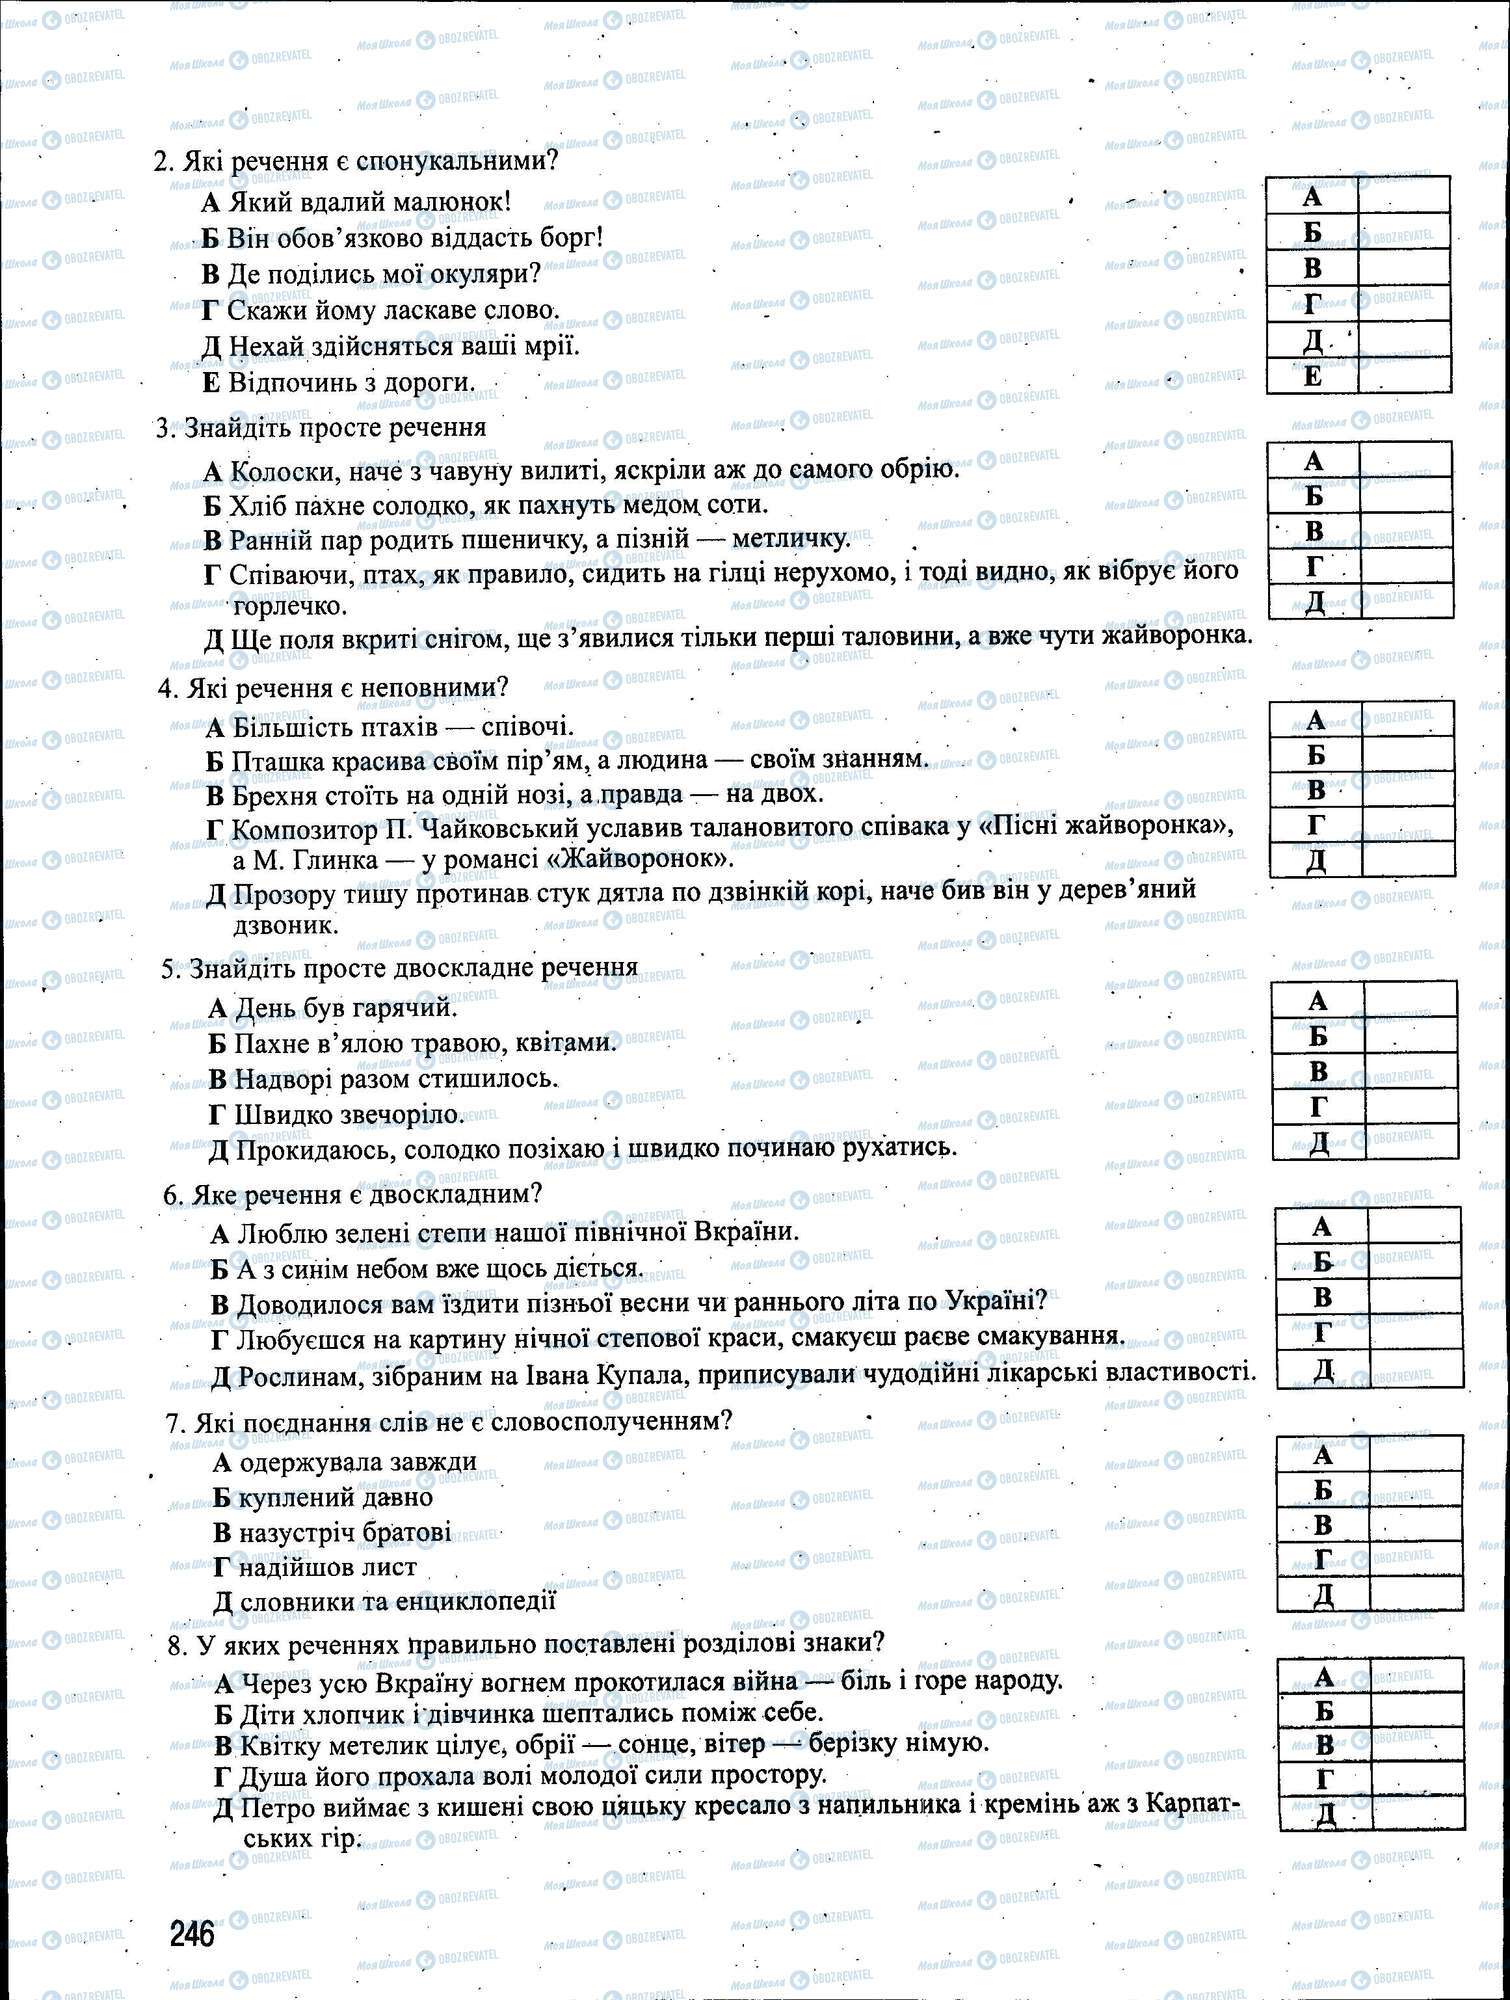 ЗНО Укр мова 11 класс страница 246